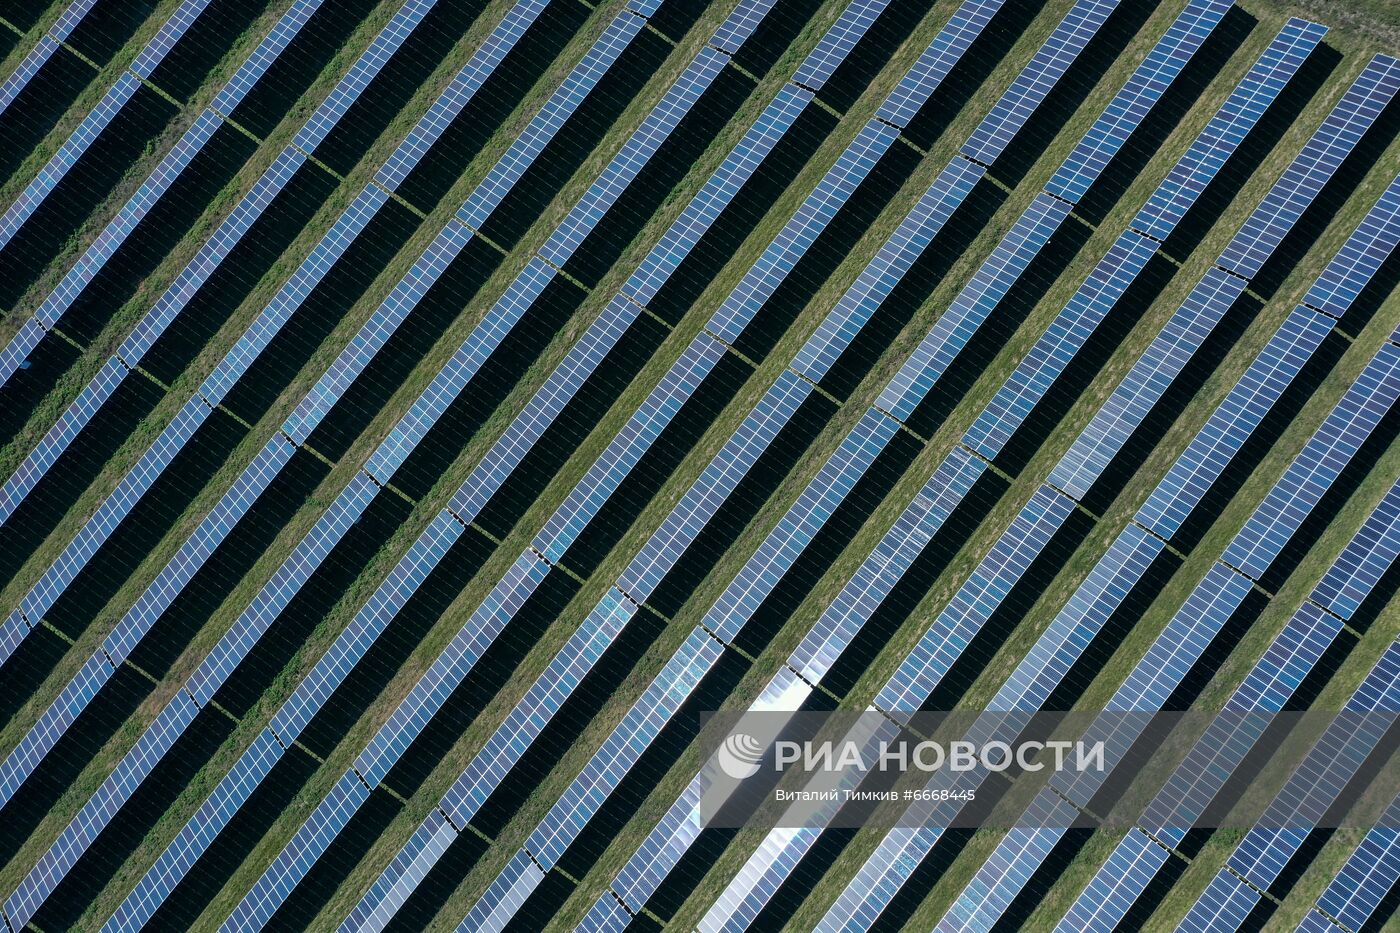 Работа солнечных и ветряных электростанций в Республике Адыгея